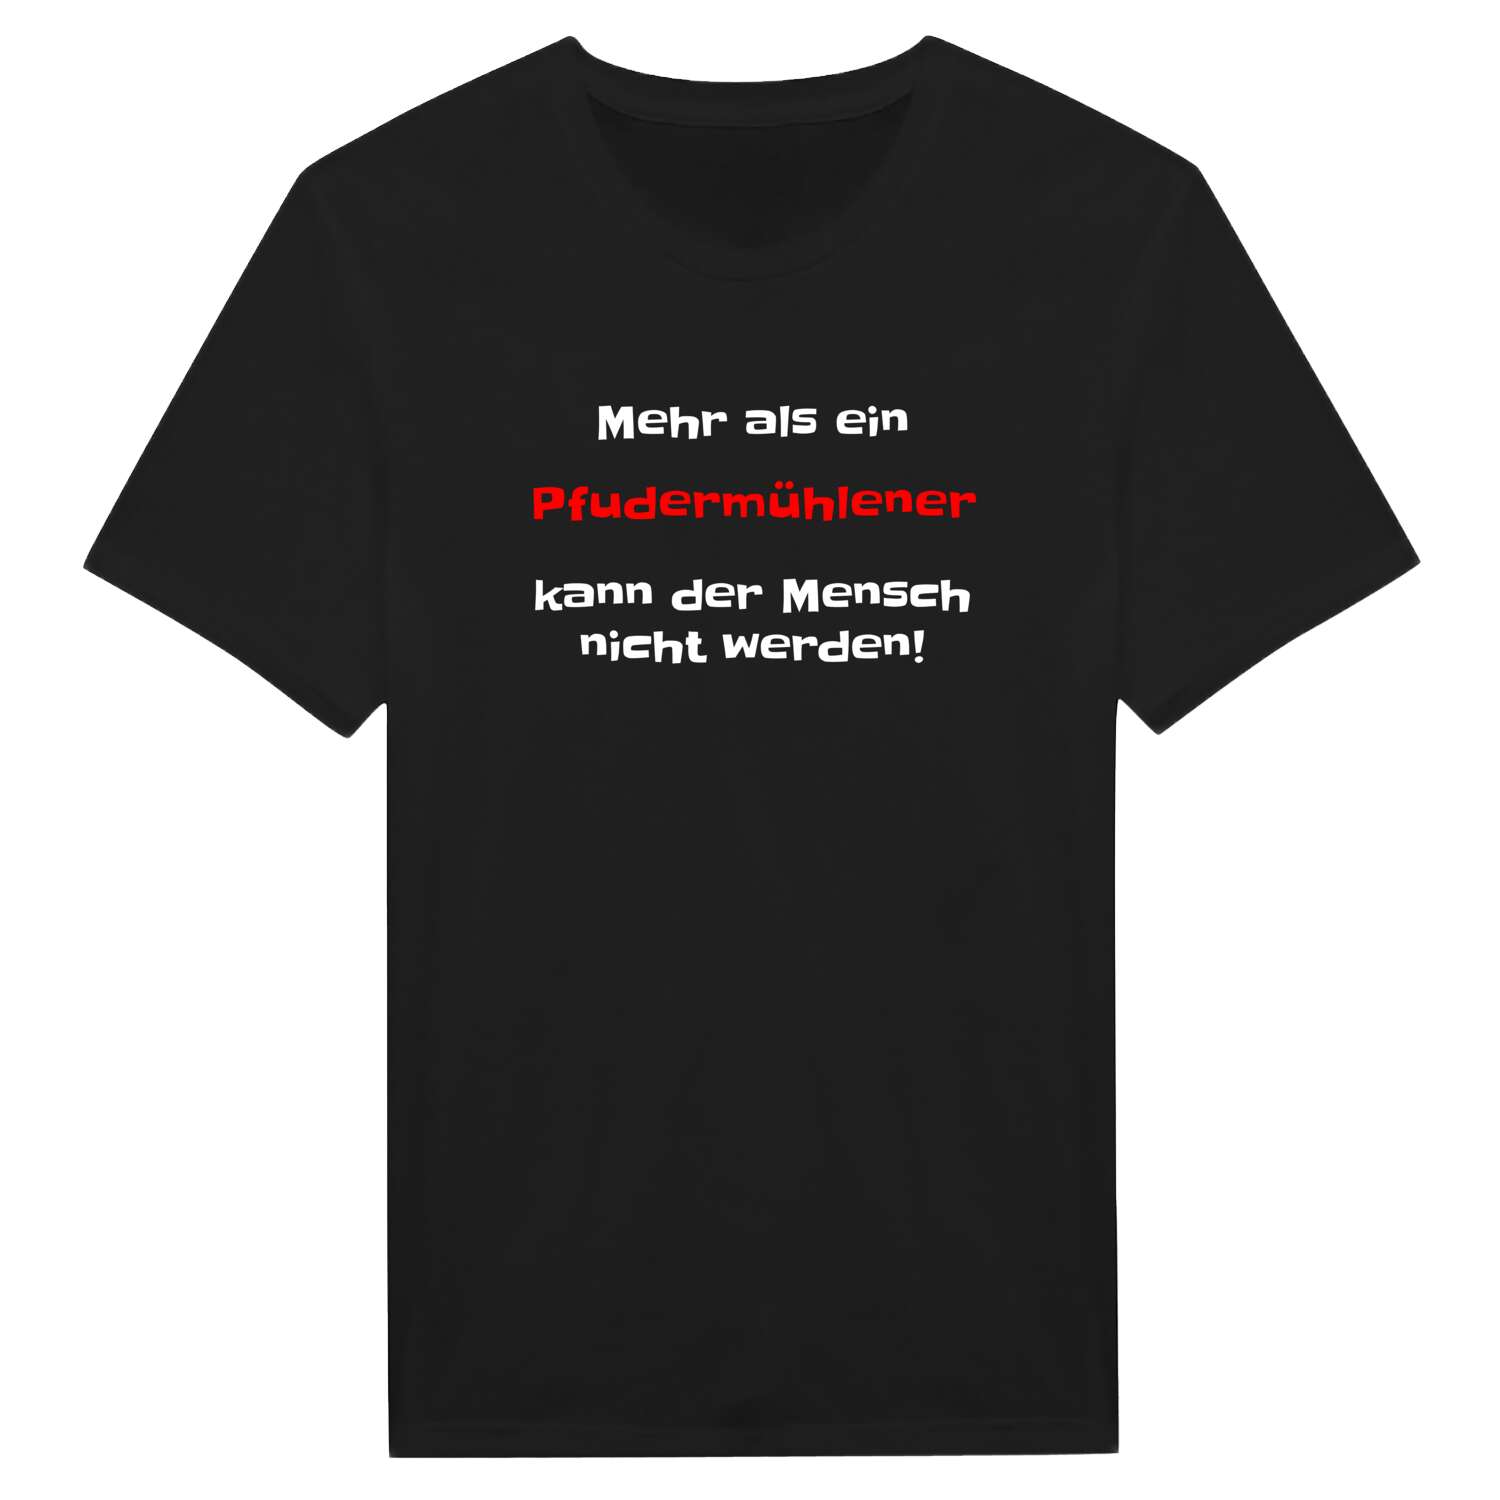 Pfudermühle T-Shirt »Mehr als ein«